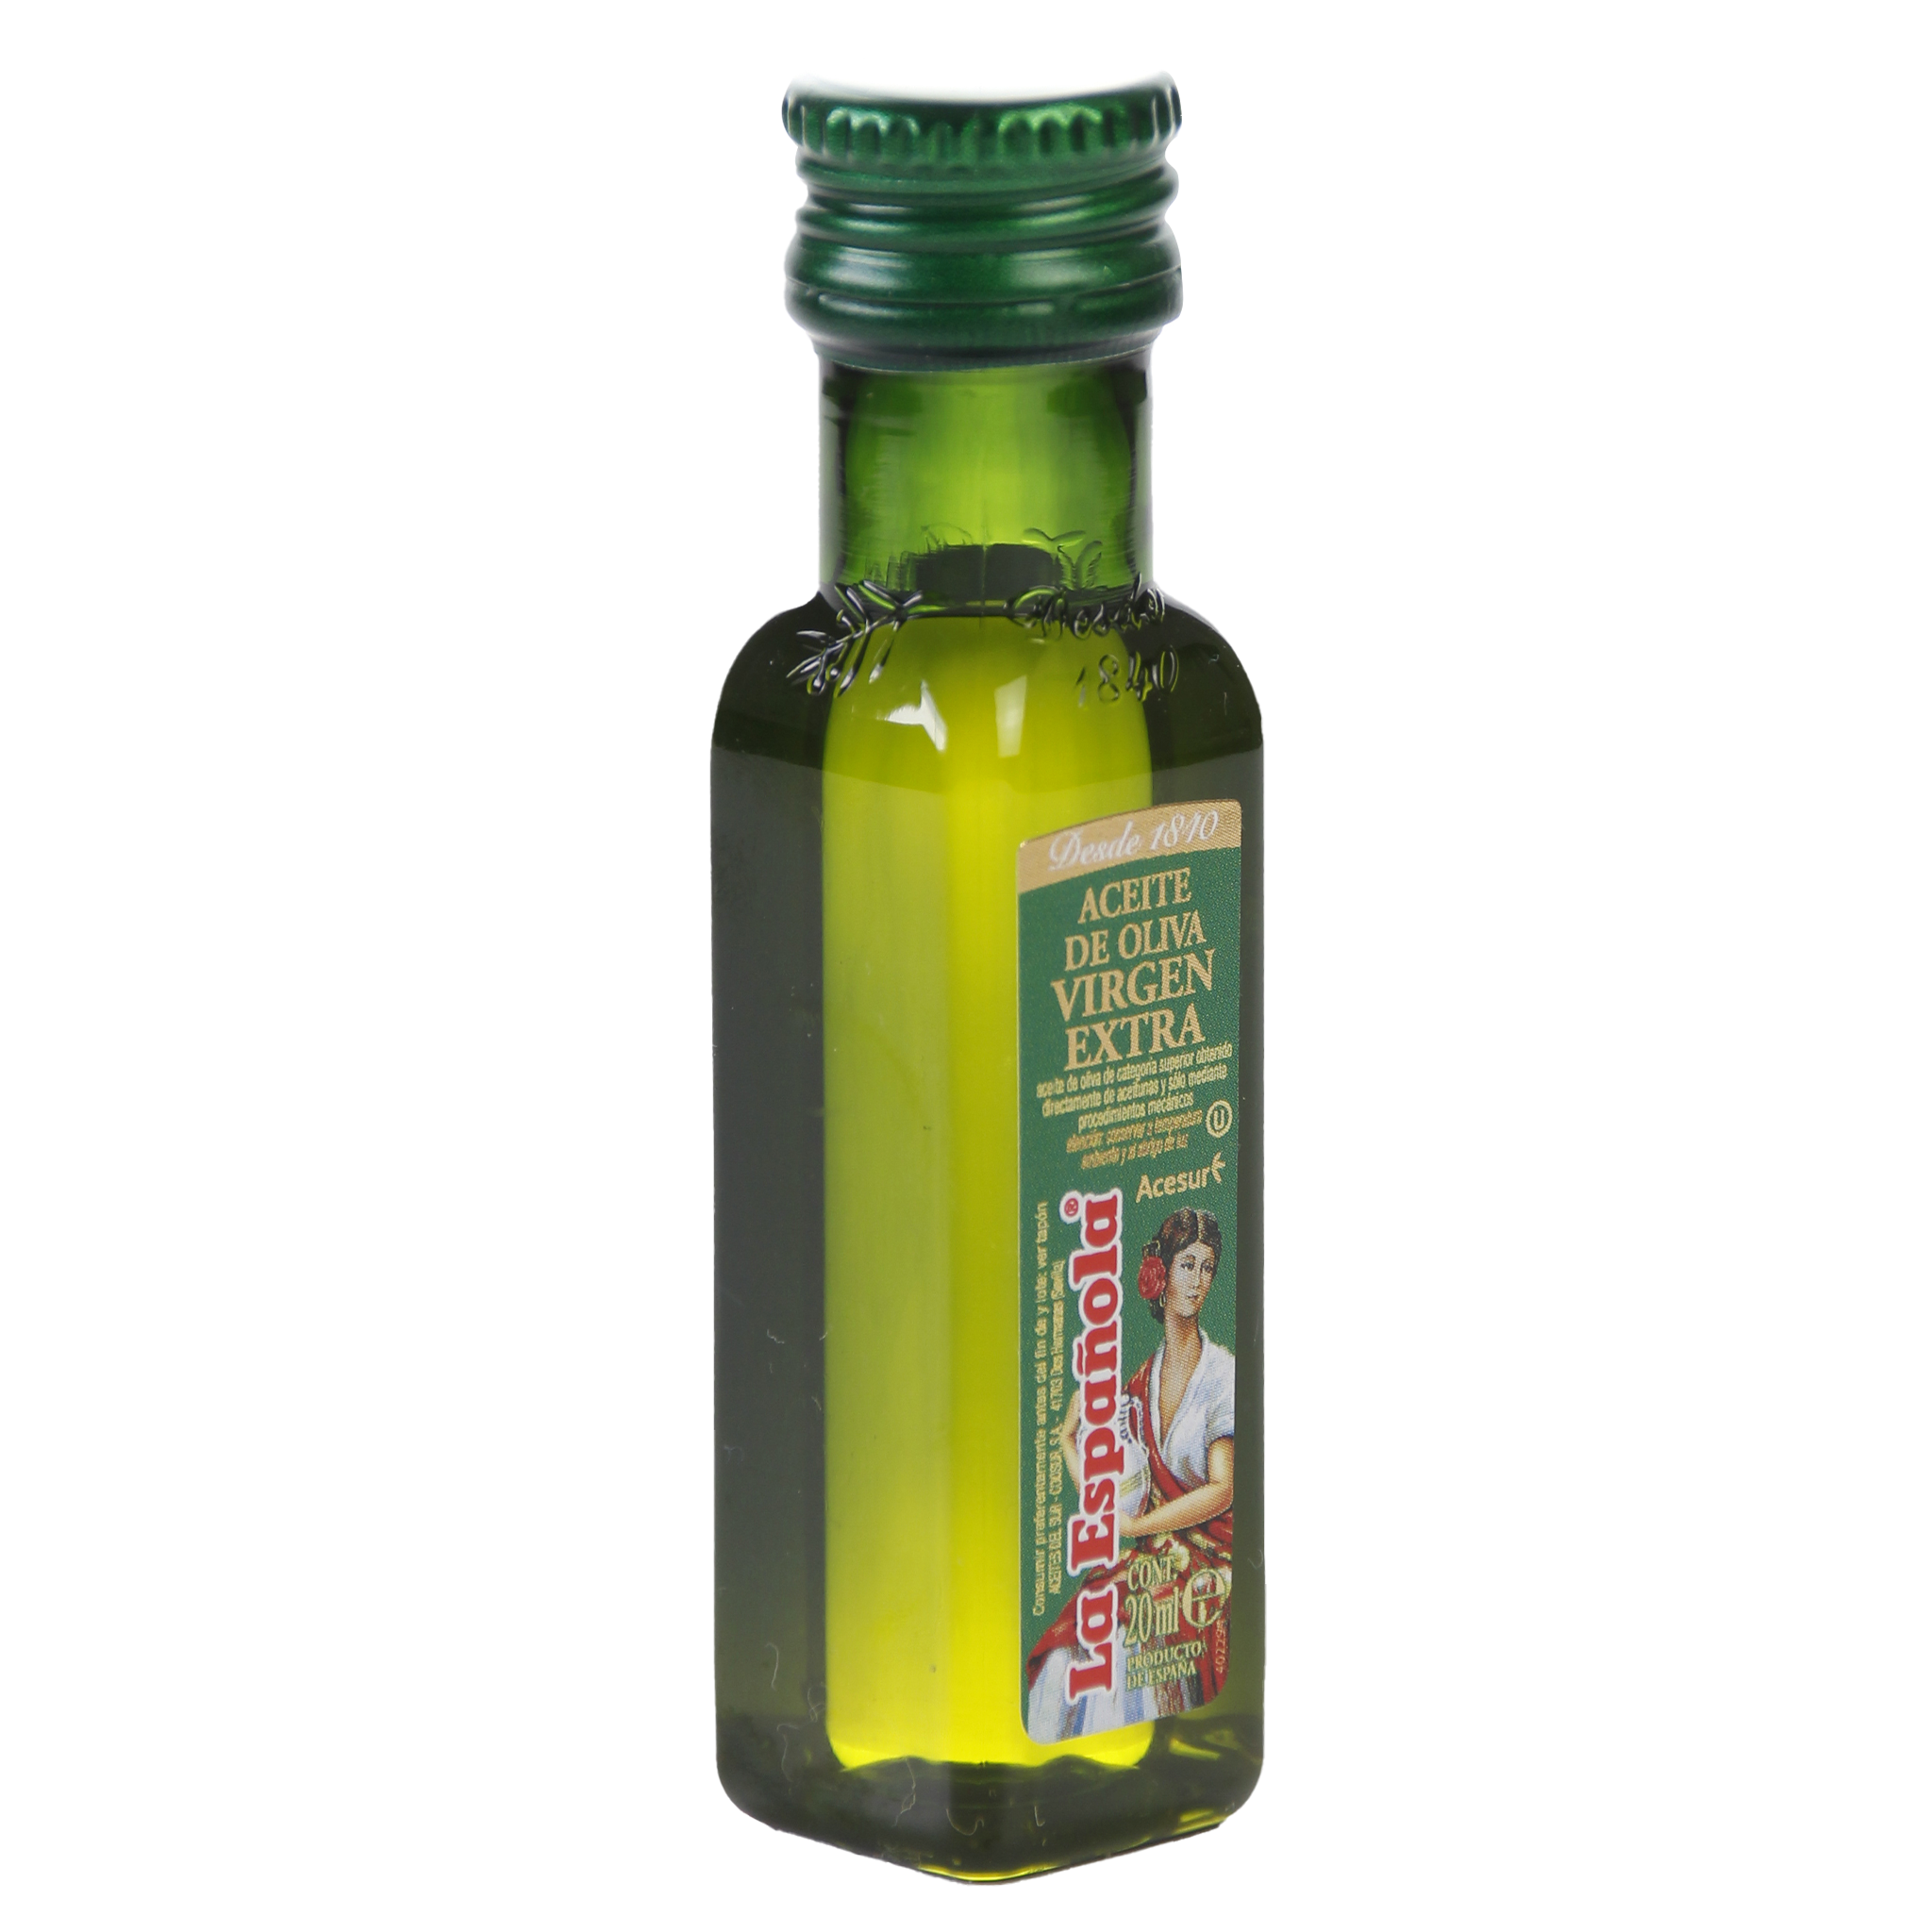 Botella aceite de oliva. 50ml. Botella de cristal. Modelo mini. Tienda  on-line.